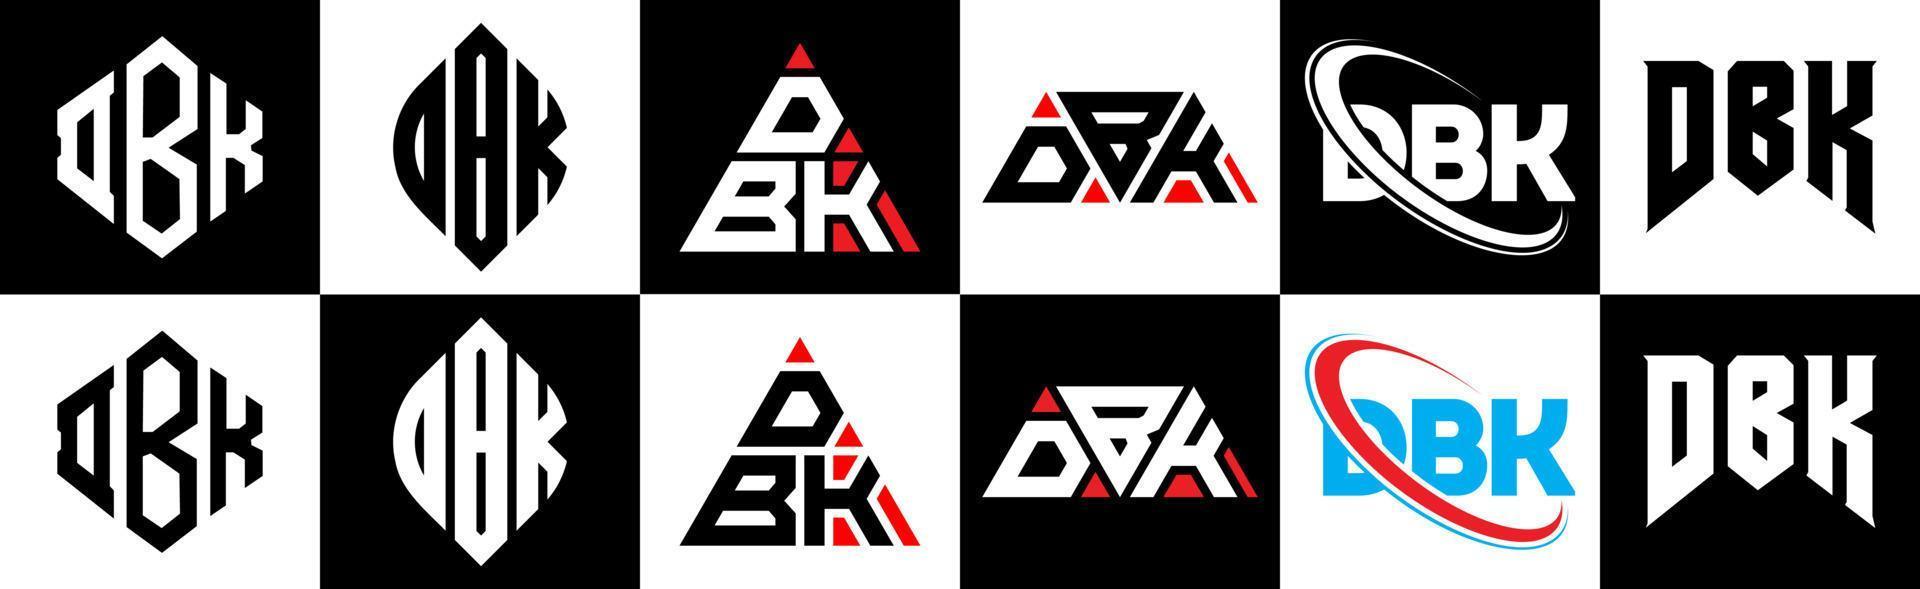 dbk-Buchstaben-Logo-Design in sechs Stilen. dbk-Polygon, Kreis, Dreieck, Sechseck, flacher und einfacher Stil mit schwarz-weißem Buchstabenlogo in einer Zeichenfläche. dbk minimalistisches und klassisches Logo vektor